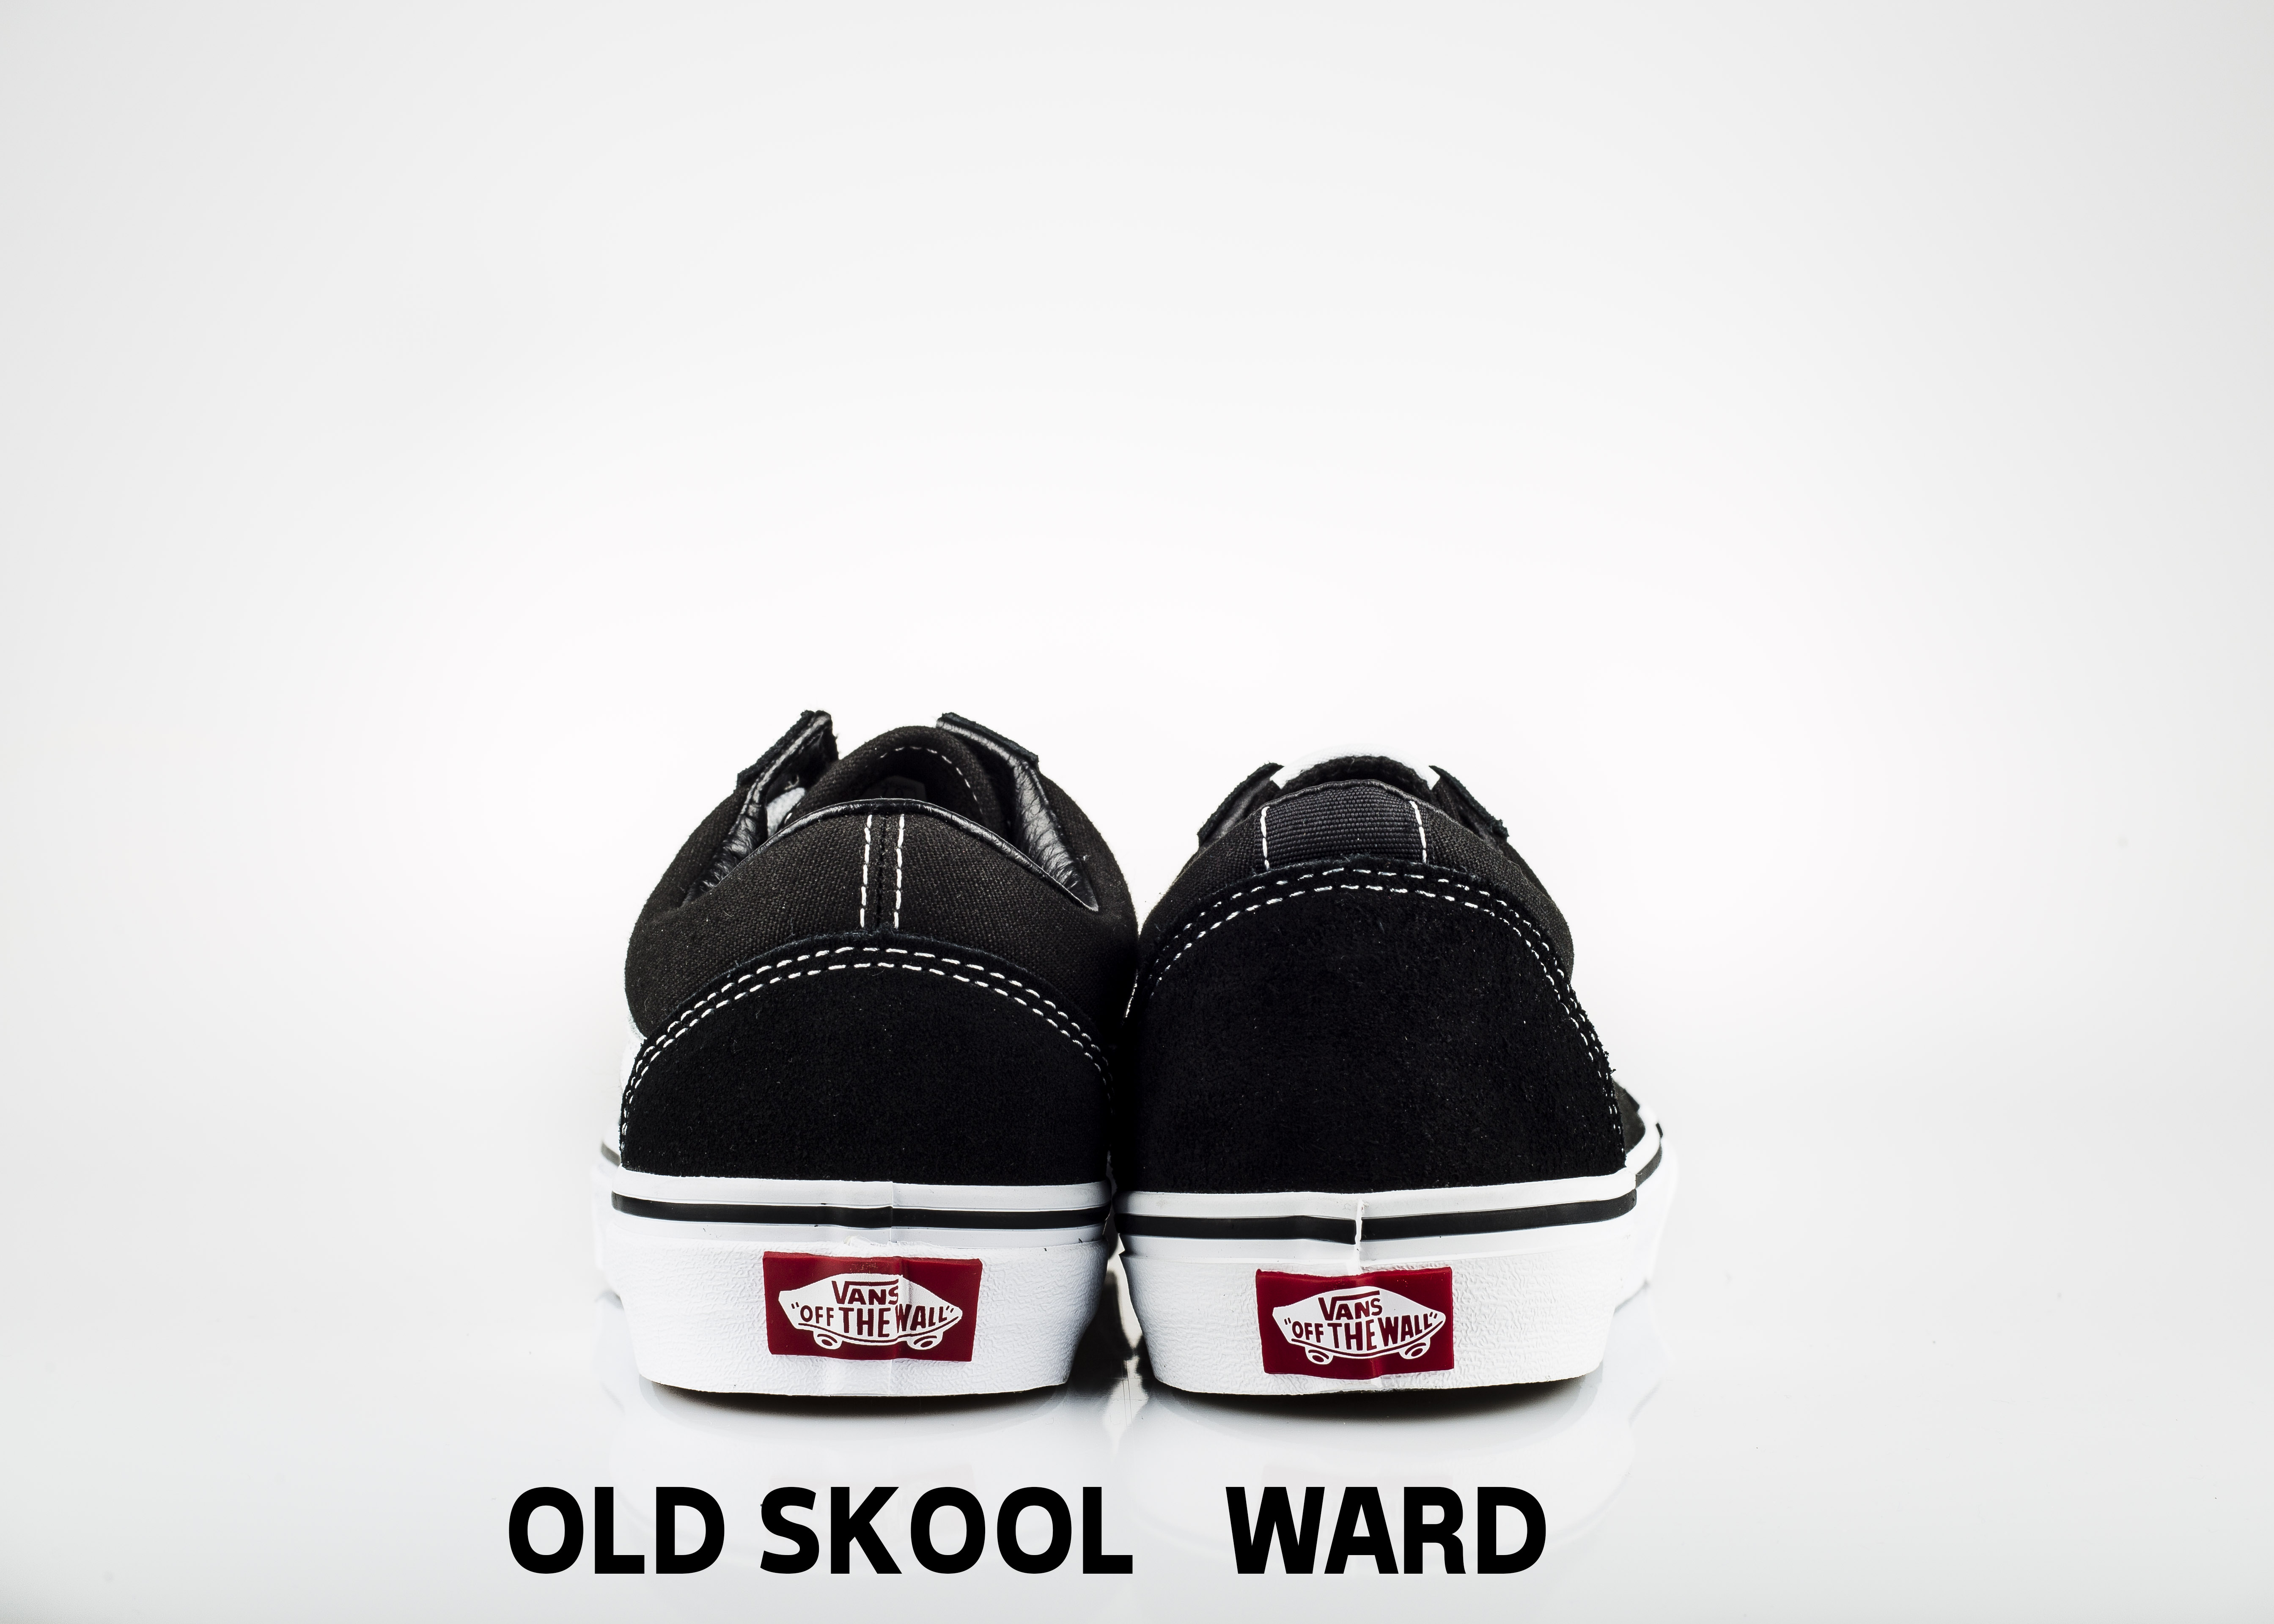 old skool vs ward